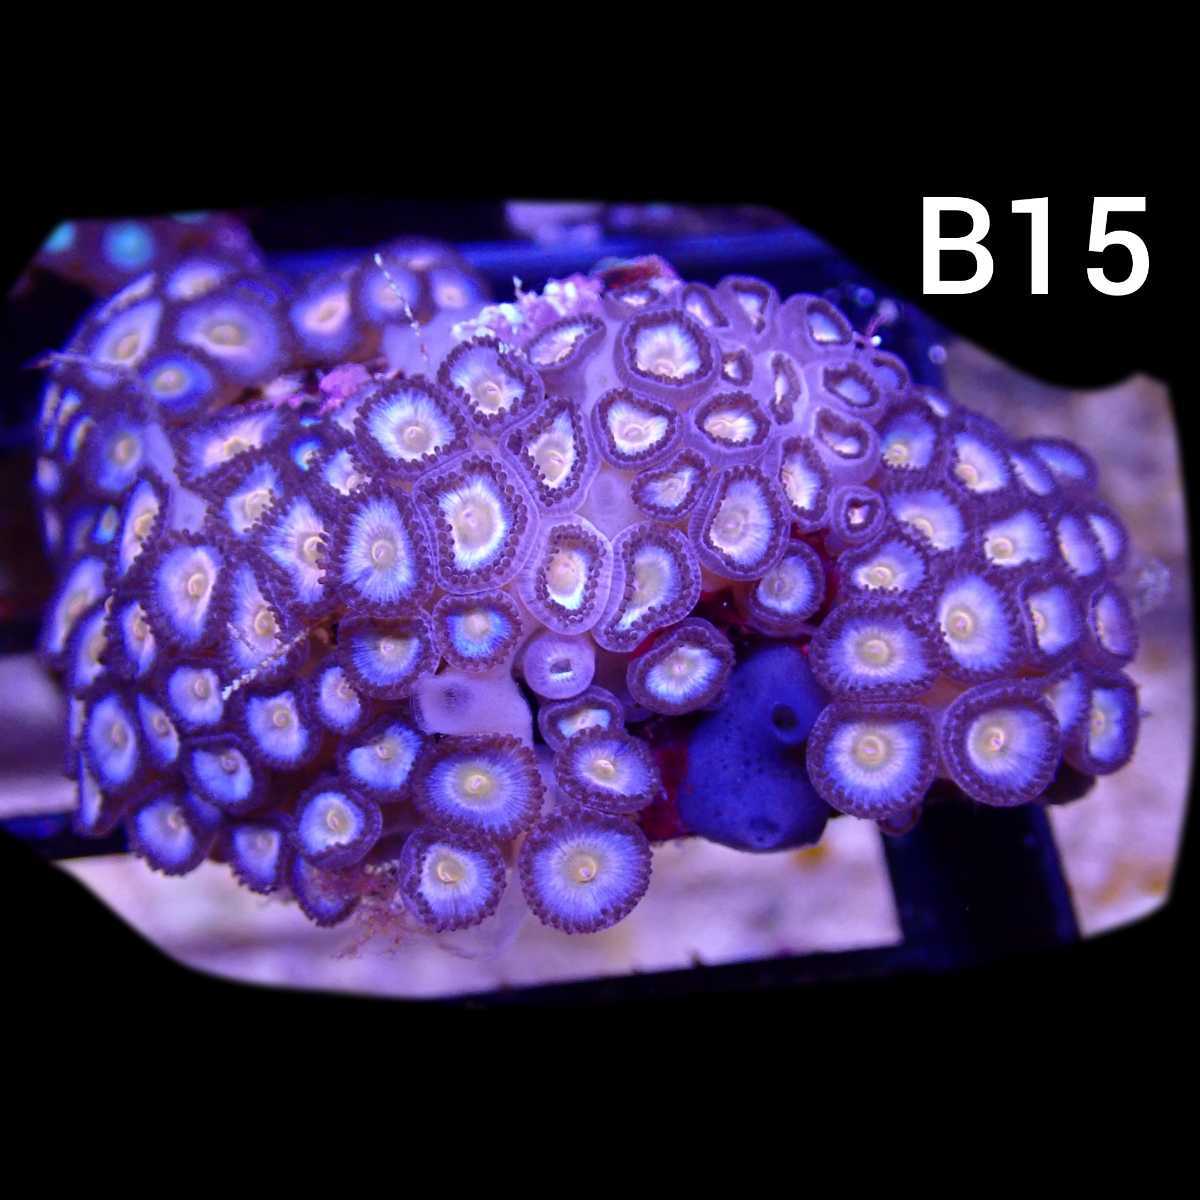 【ビジュアル】クロシオマメスナギンチャク B15 マメスナの画像1